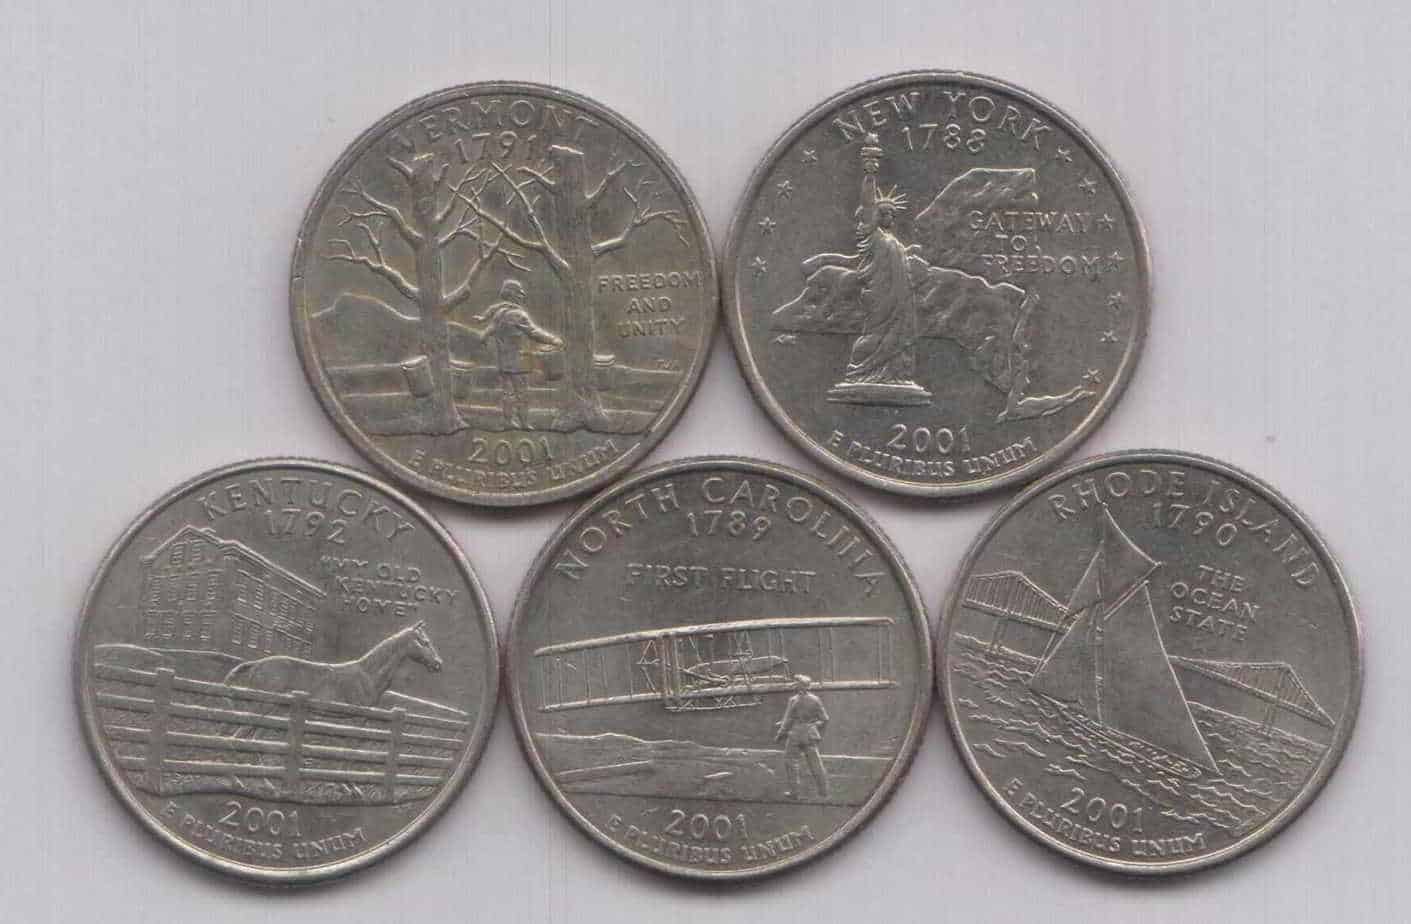 Mint Proof State Quarter Set 2003 S U.S OGP Original Government Packaging Superb Gem Uncirculated 5 Coins 